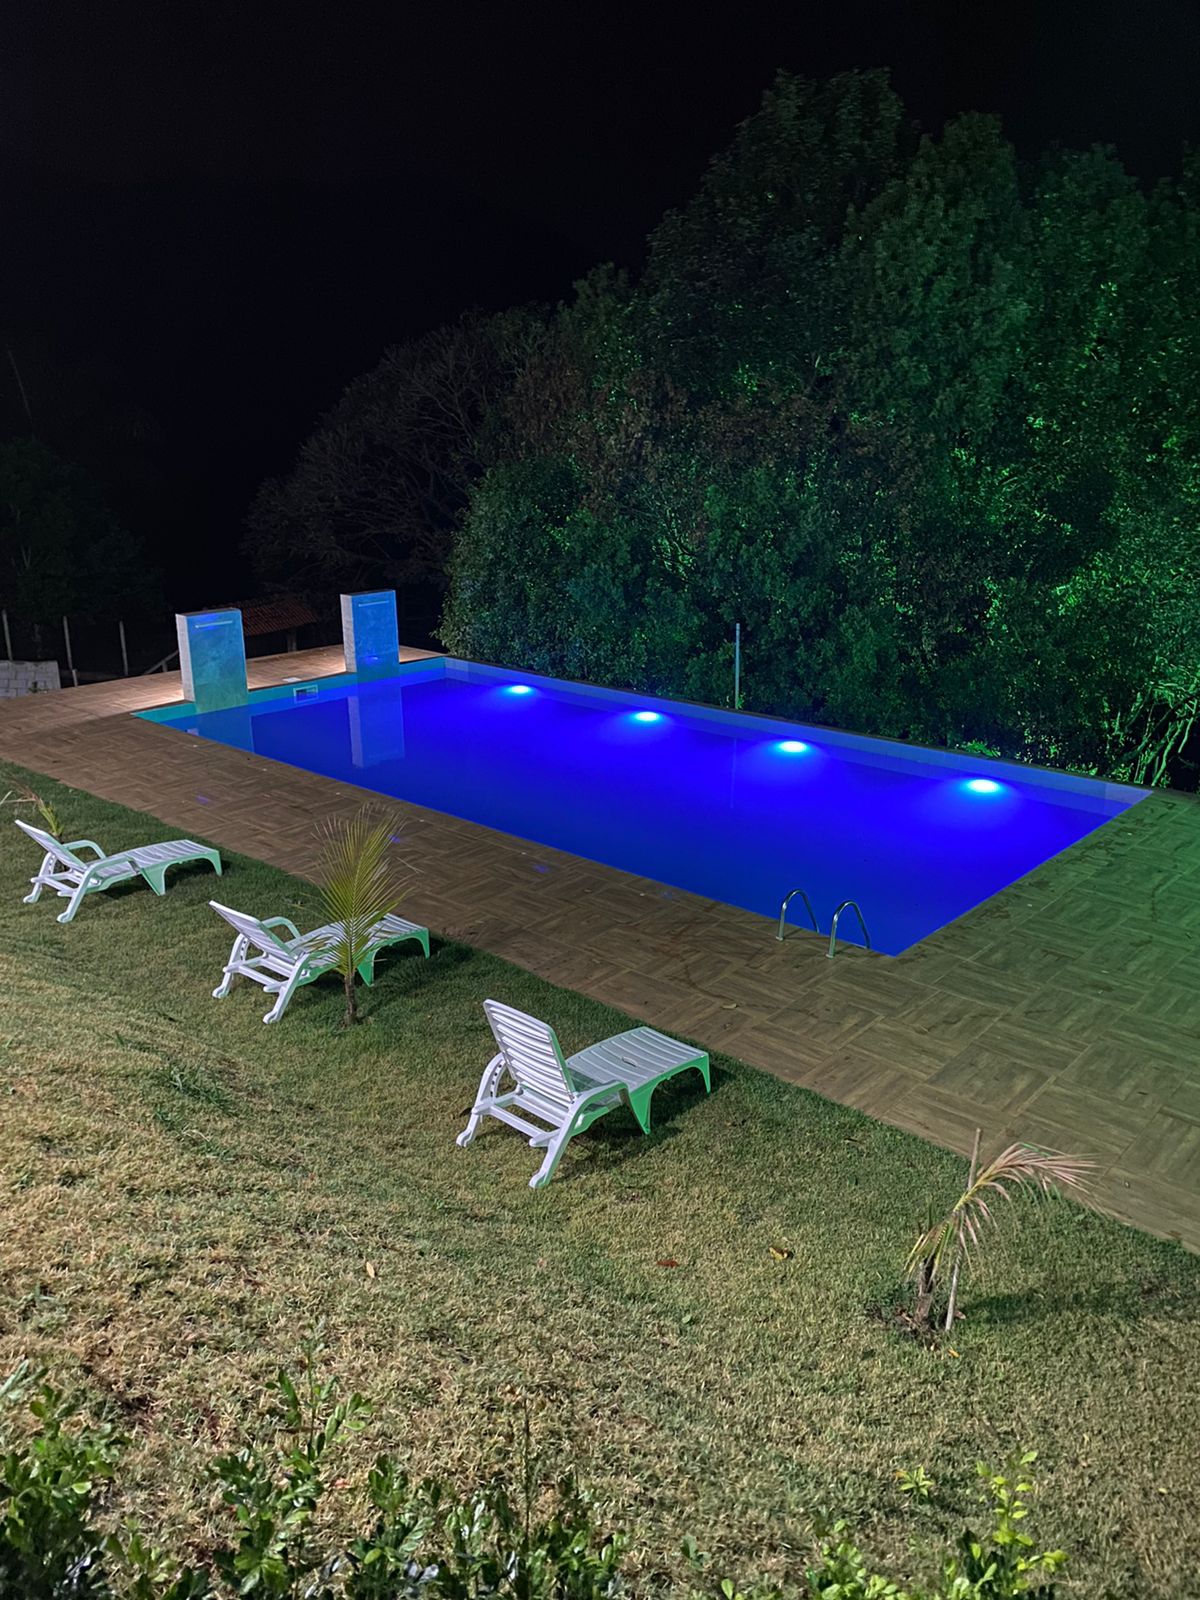 Chácara com residência espaçosa e serenamente luxuosa com piscina | Extrema - MG  | código 1024